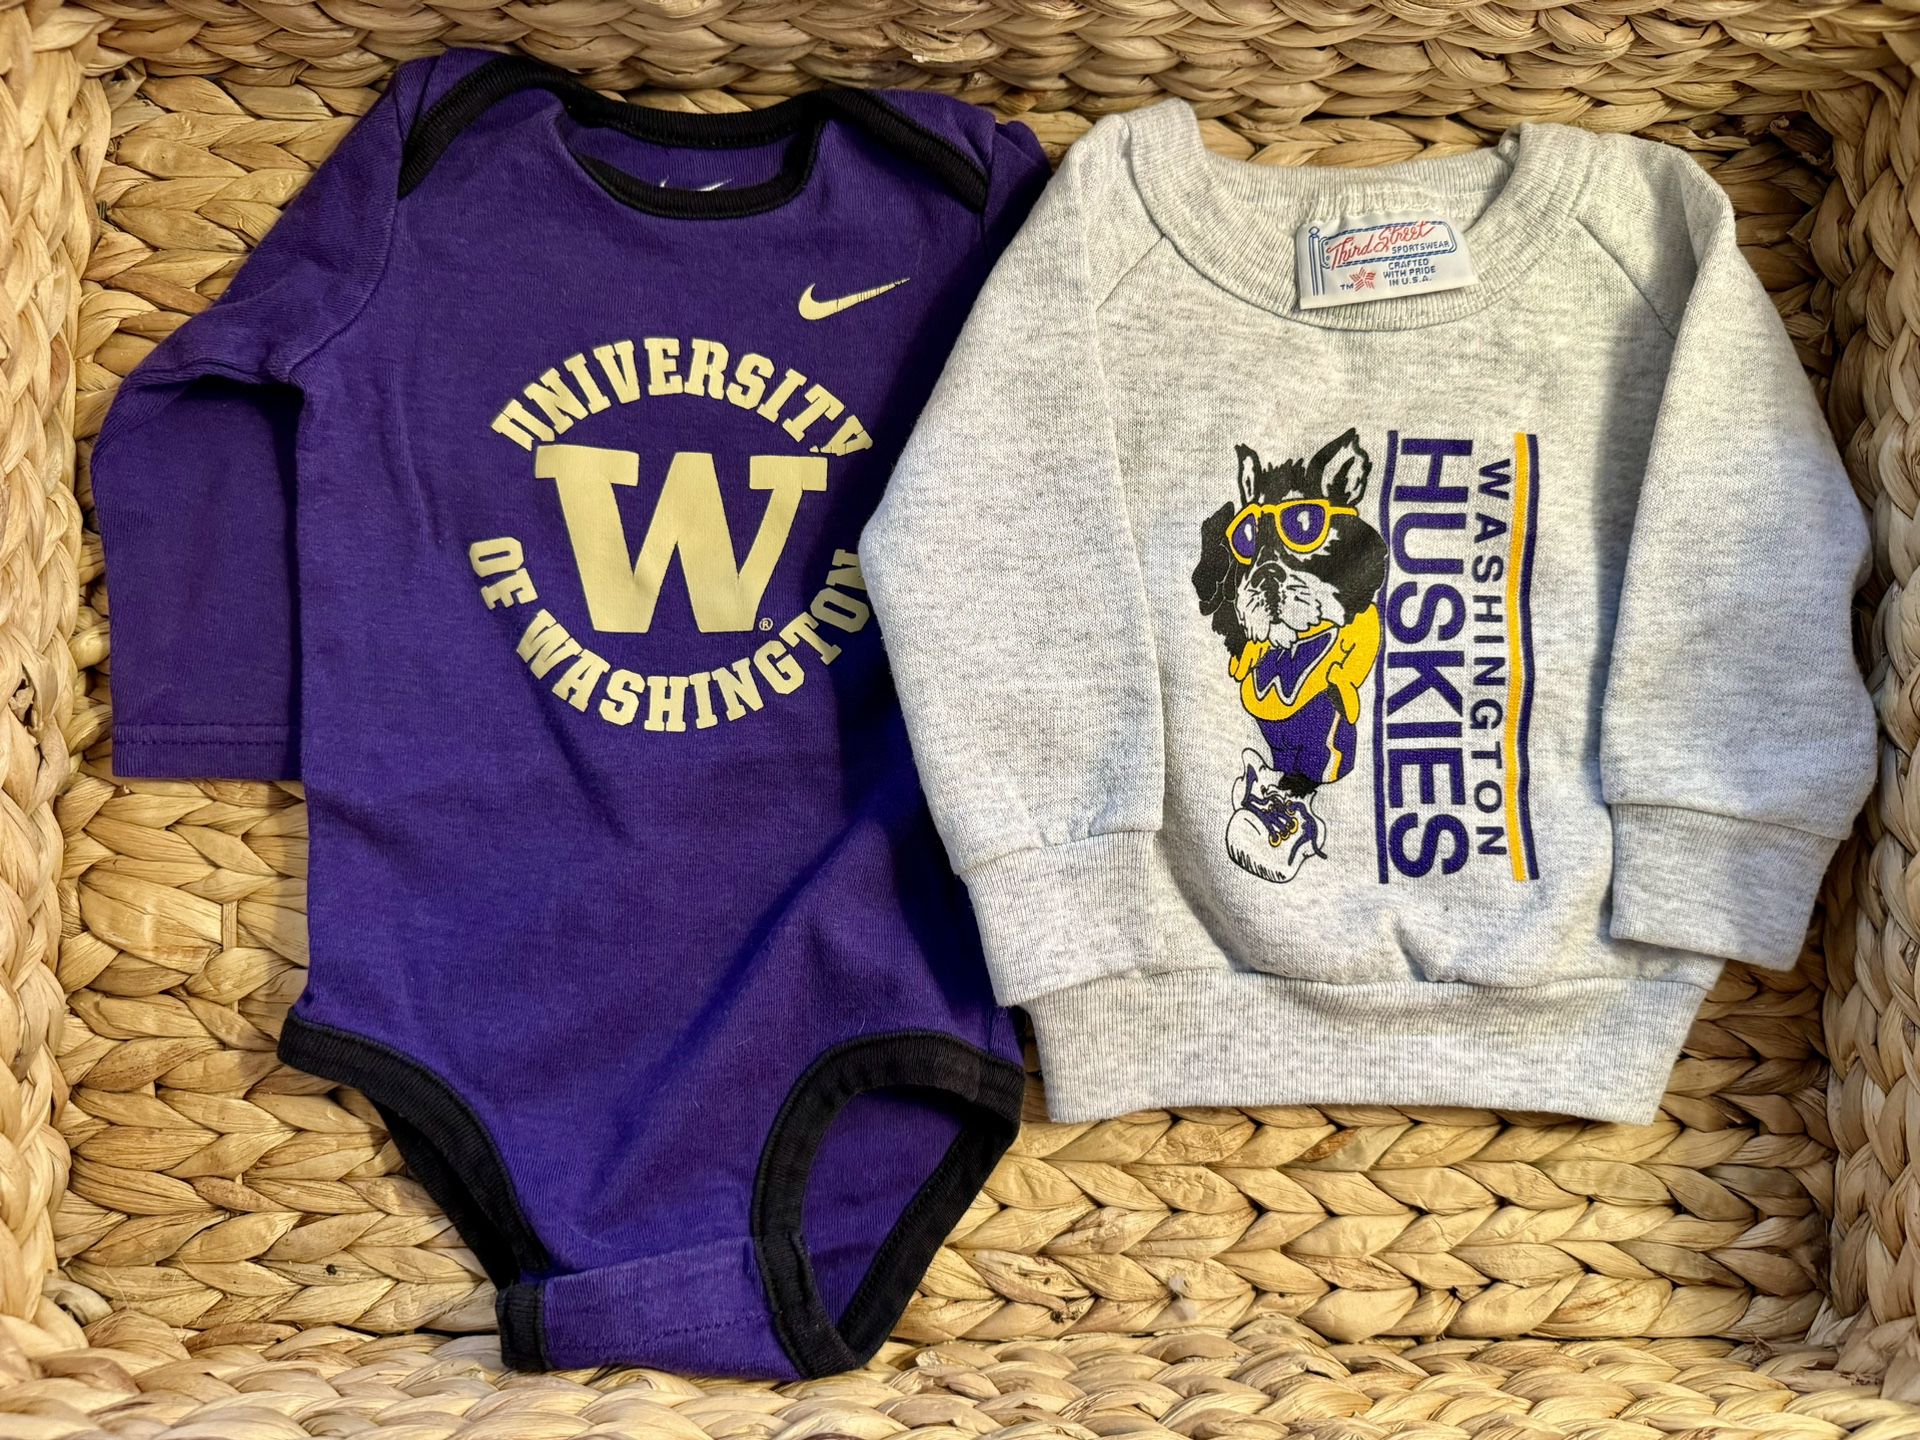 University of Washington infant merchandise